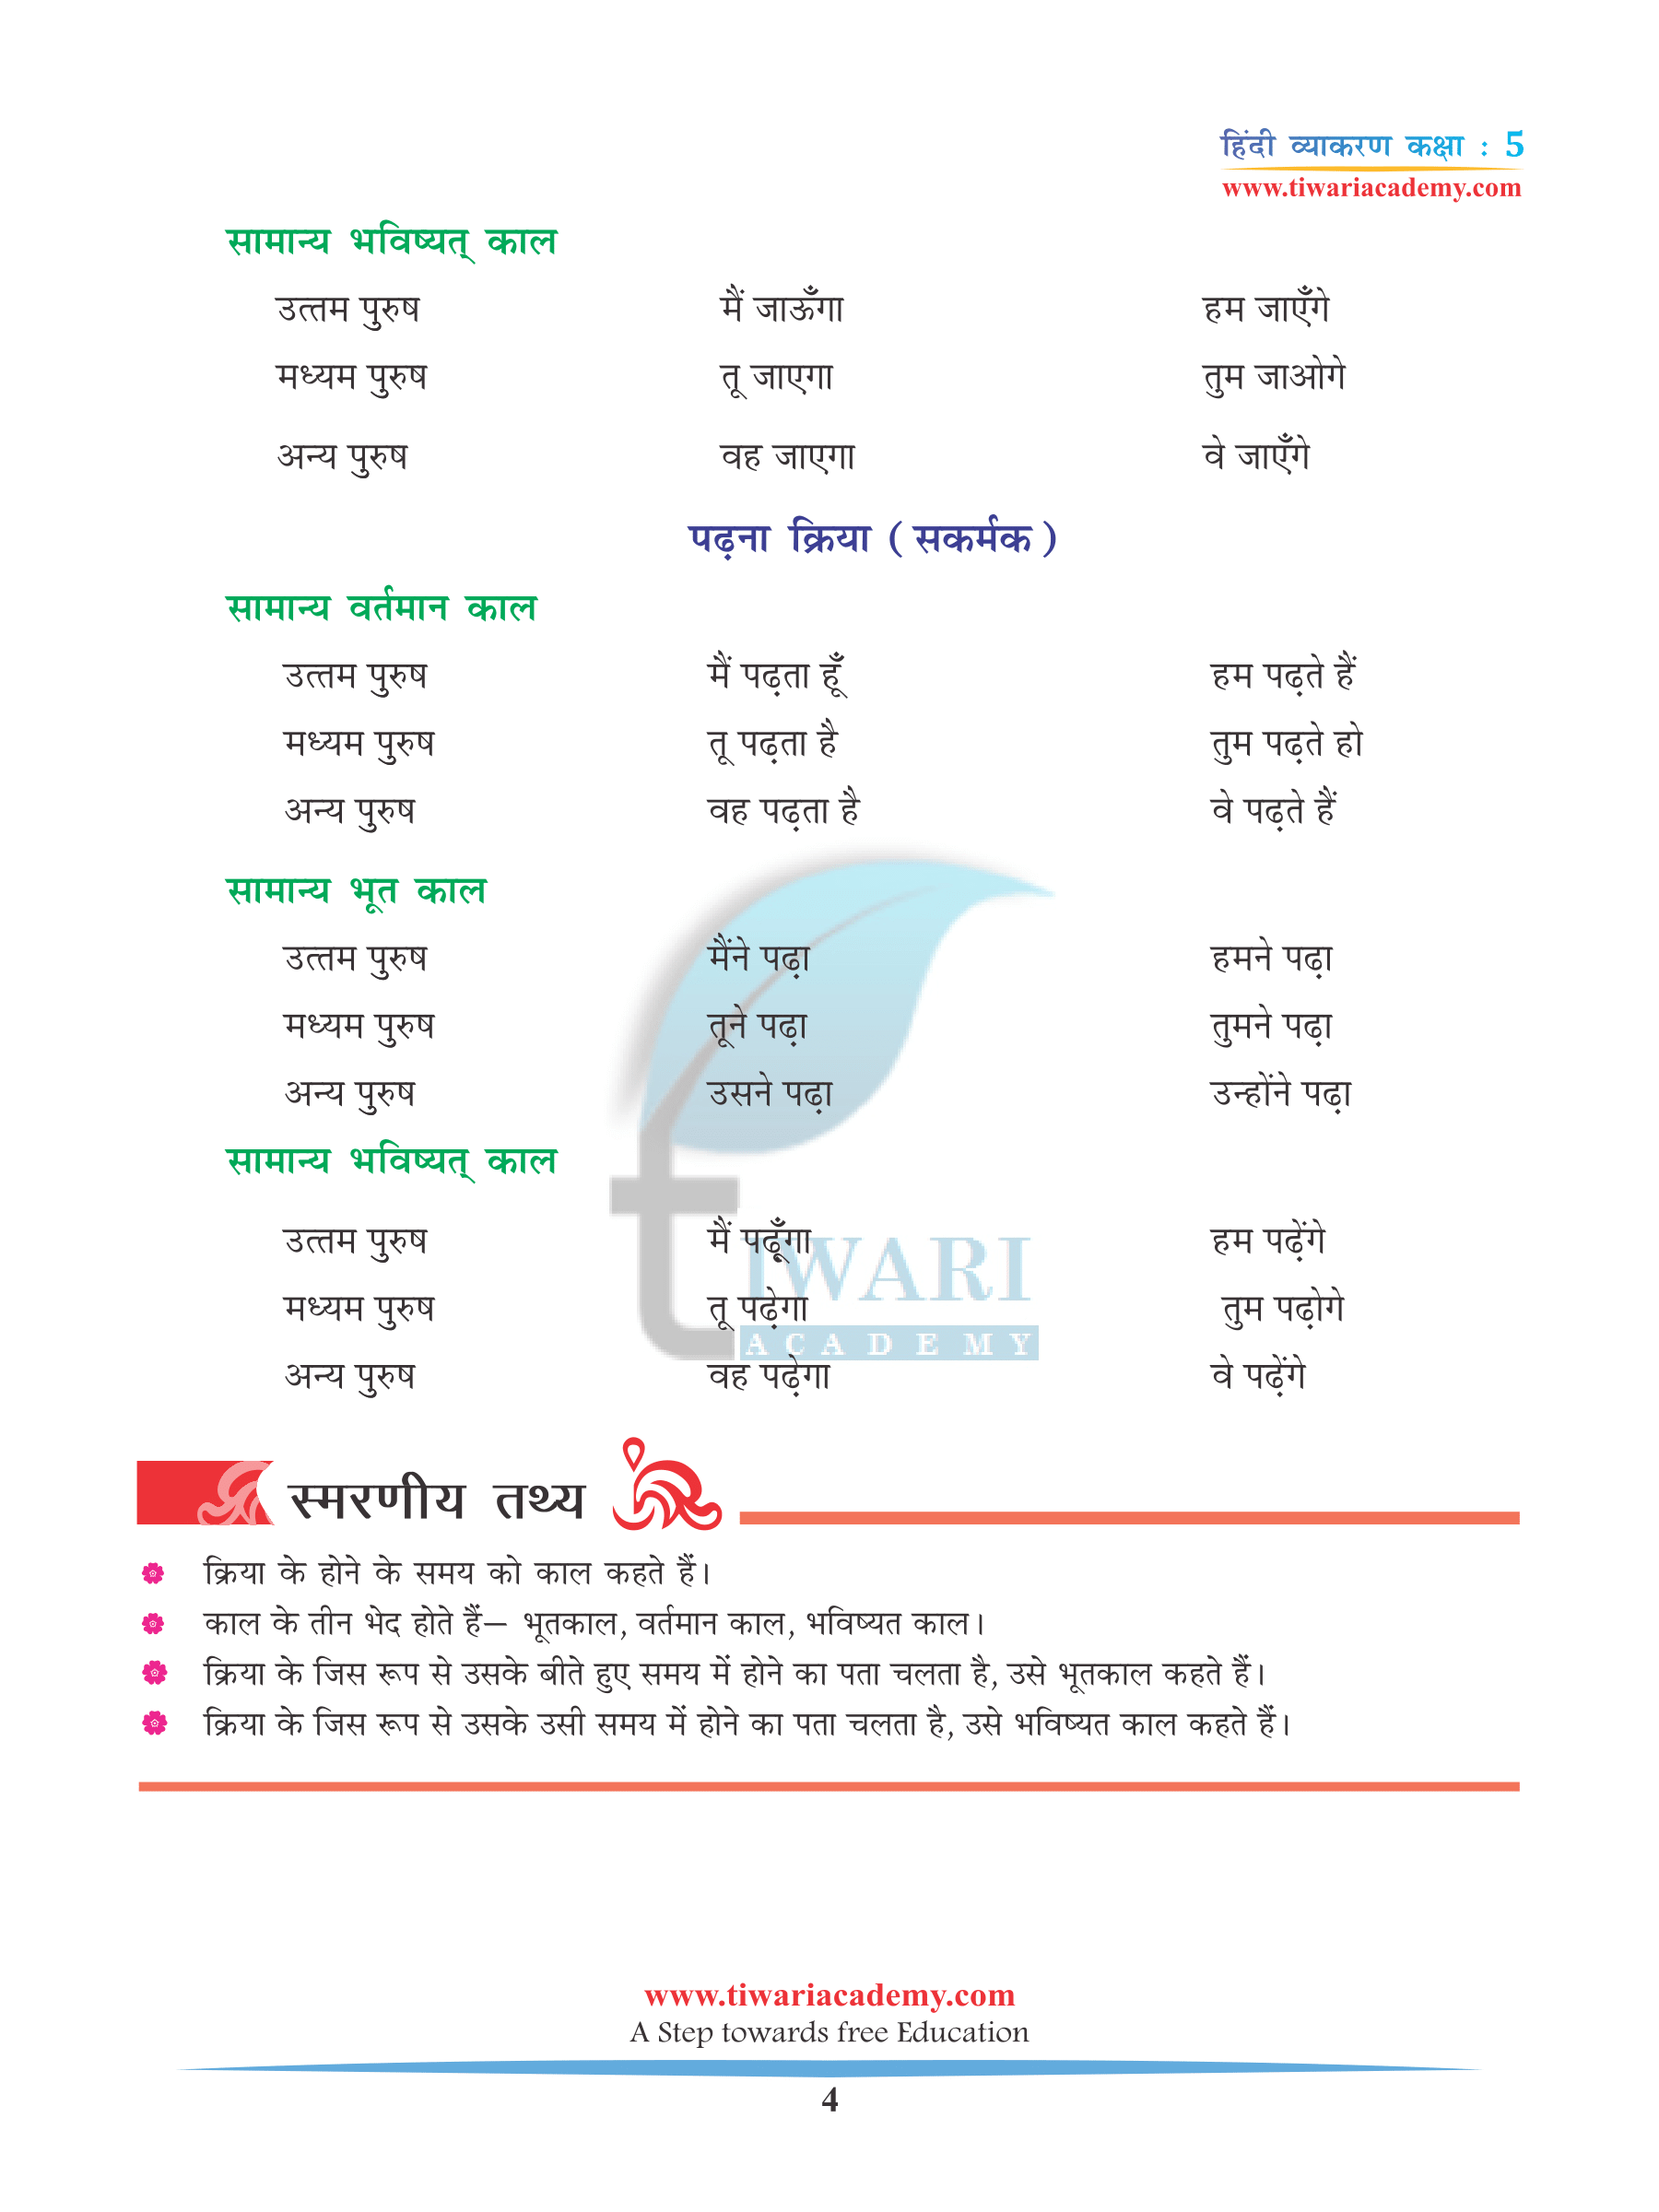 CBSE Class 5 Hindi Grammar Chapter 8 Kaal